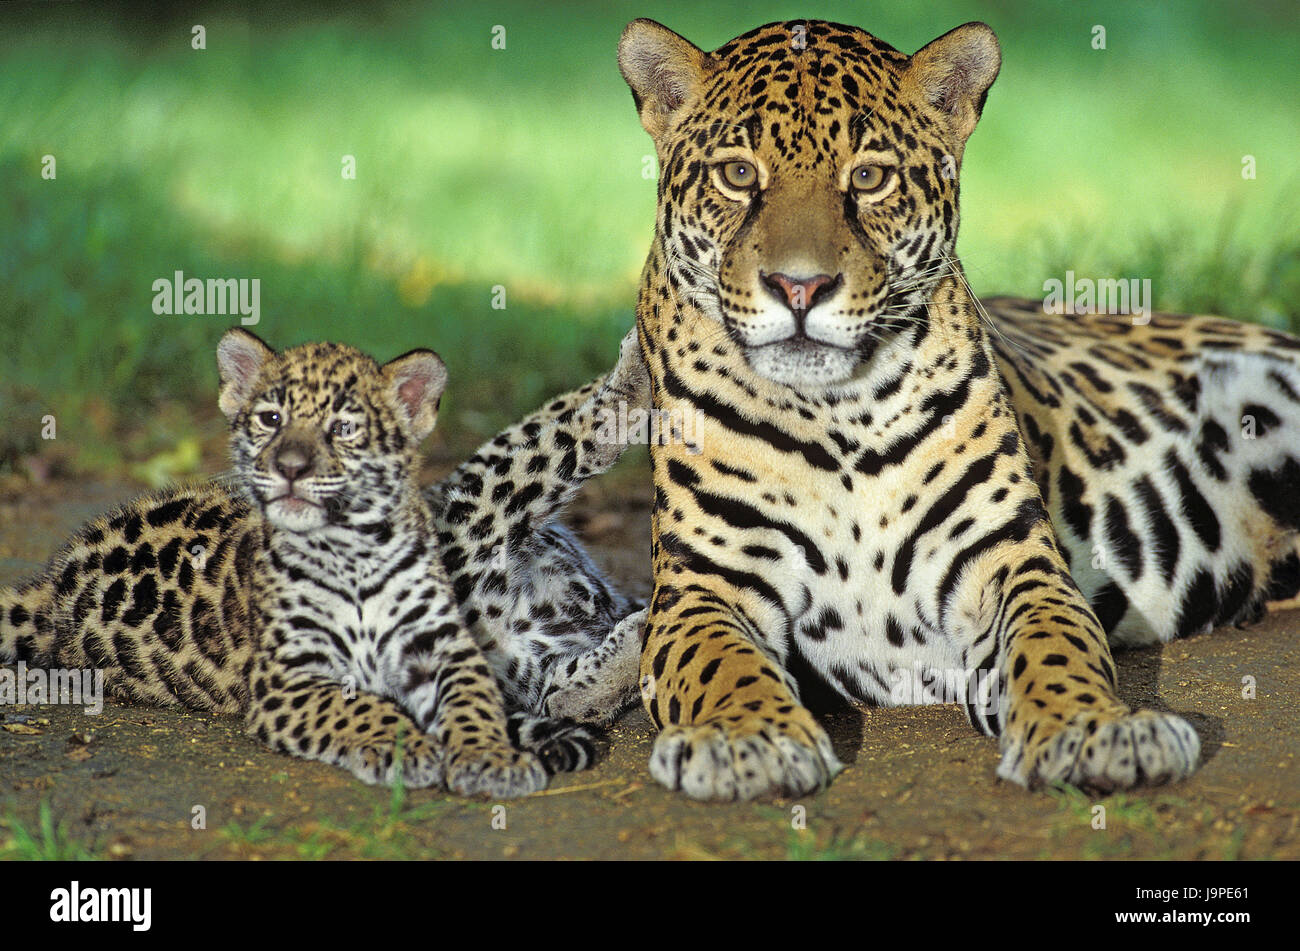 Jaguar,Panthera onca,females,young animal, Stock Photo